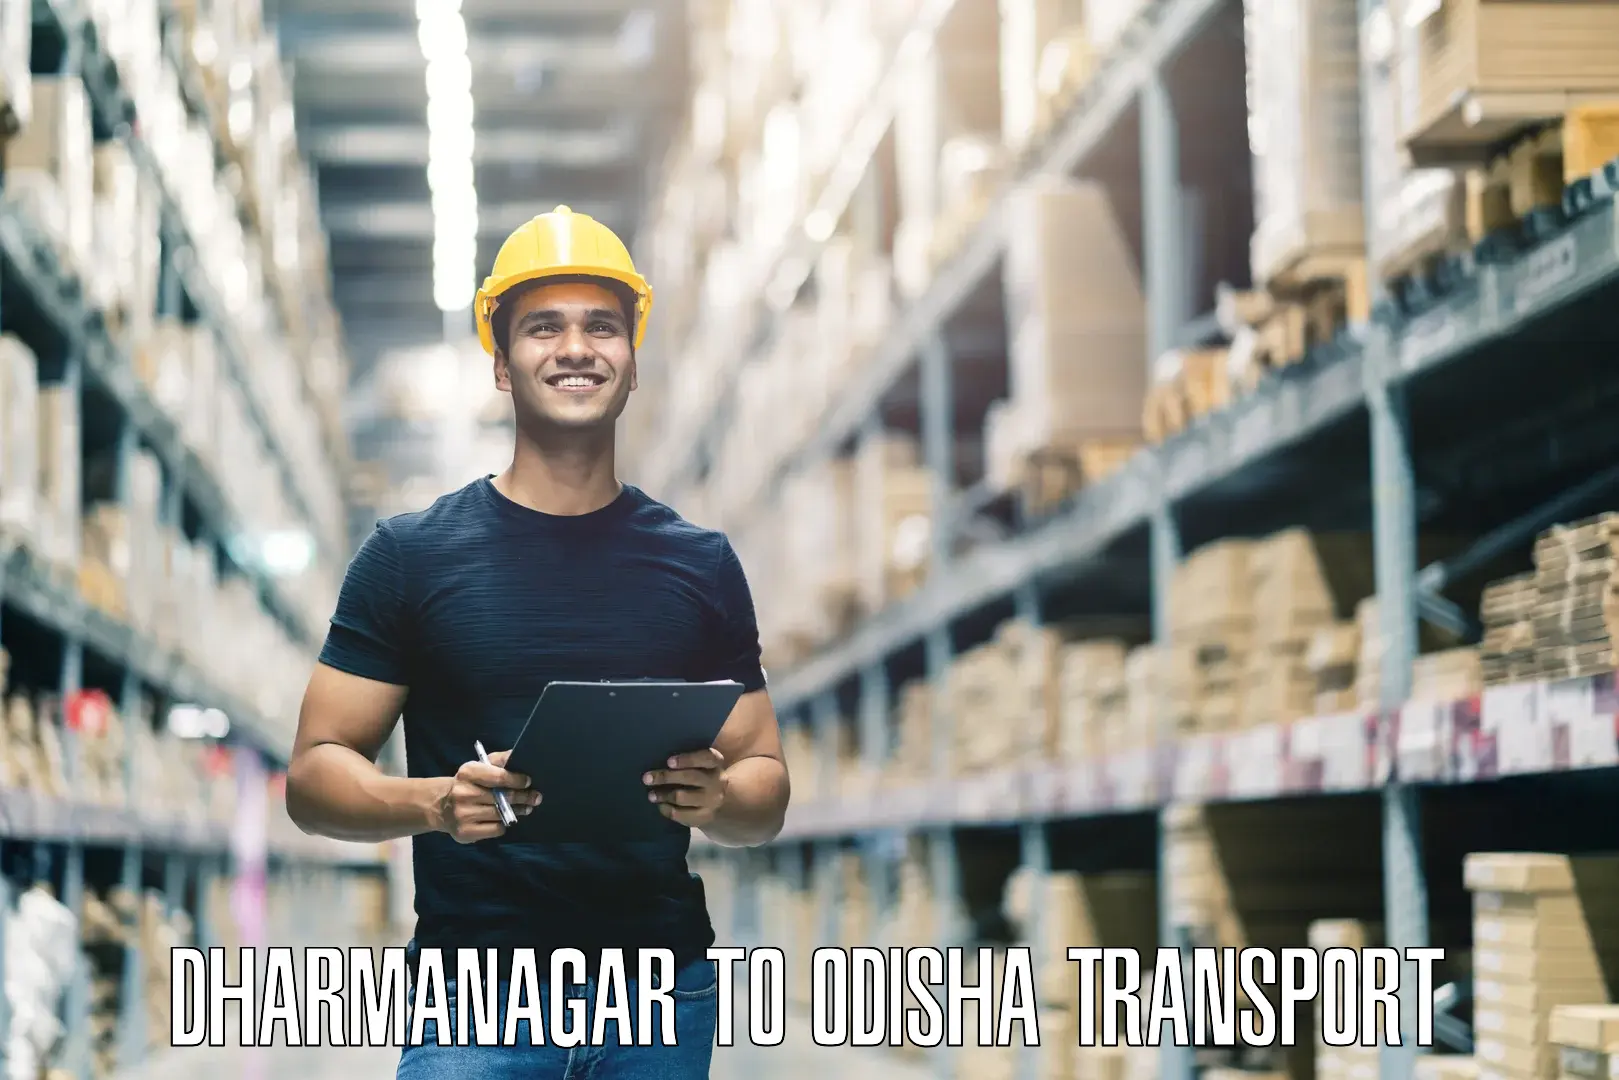 Furniture transport service Dharmanagar to Garjanpur